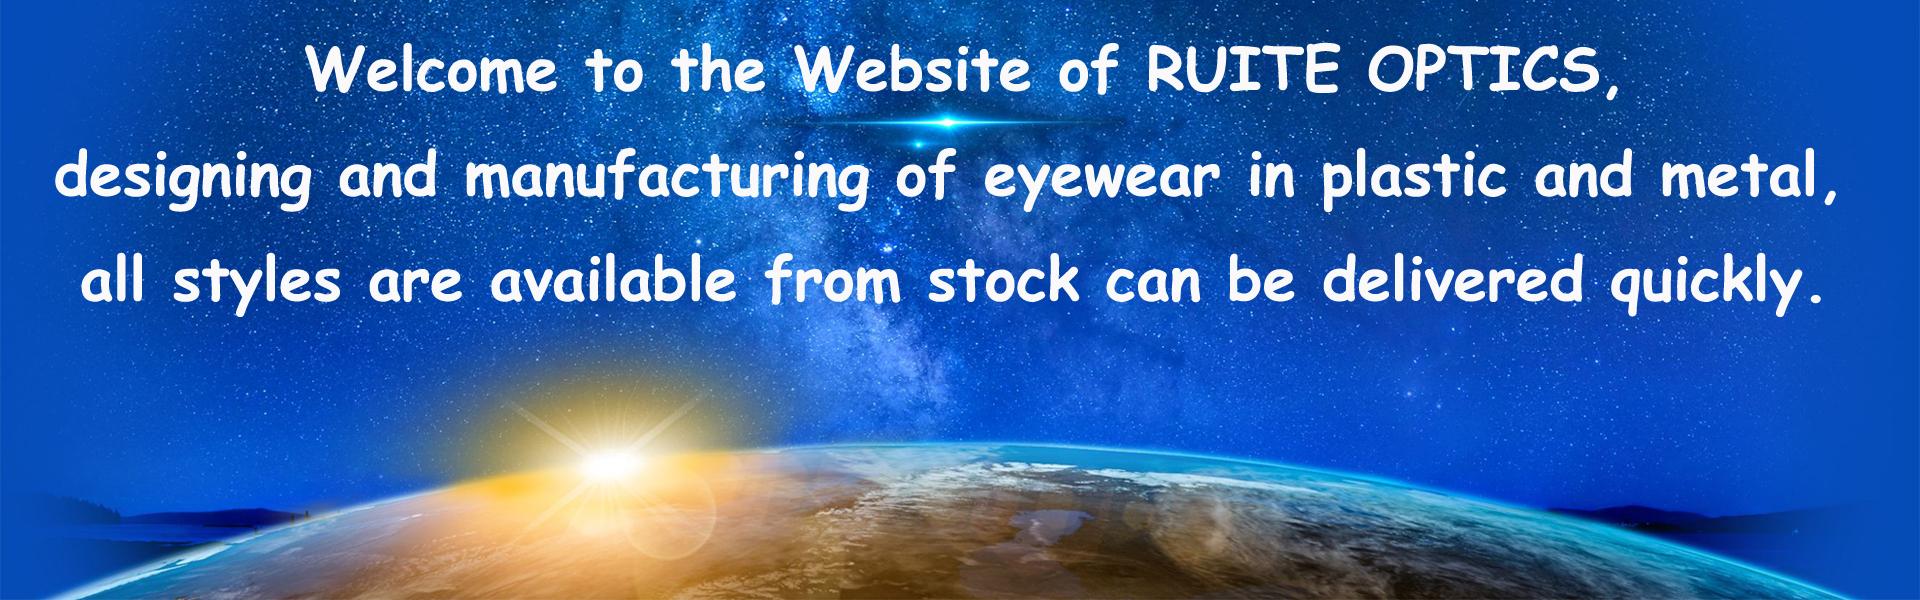 kész készlet szemüveg, szemüveg, kész készlet szemüveg,Wenzhou Ruite Optics Co.,Ltd